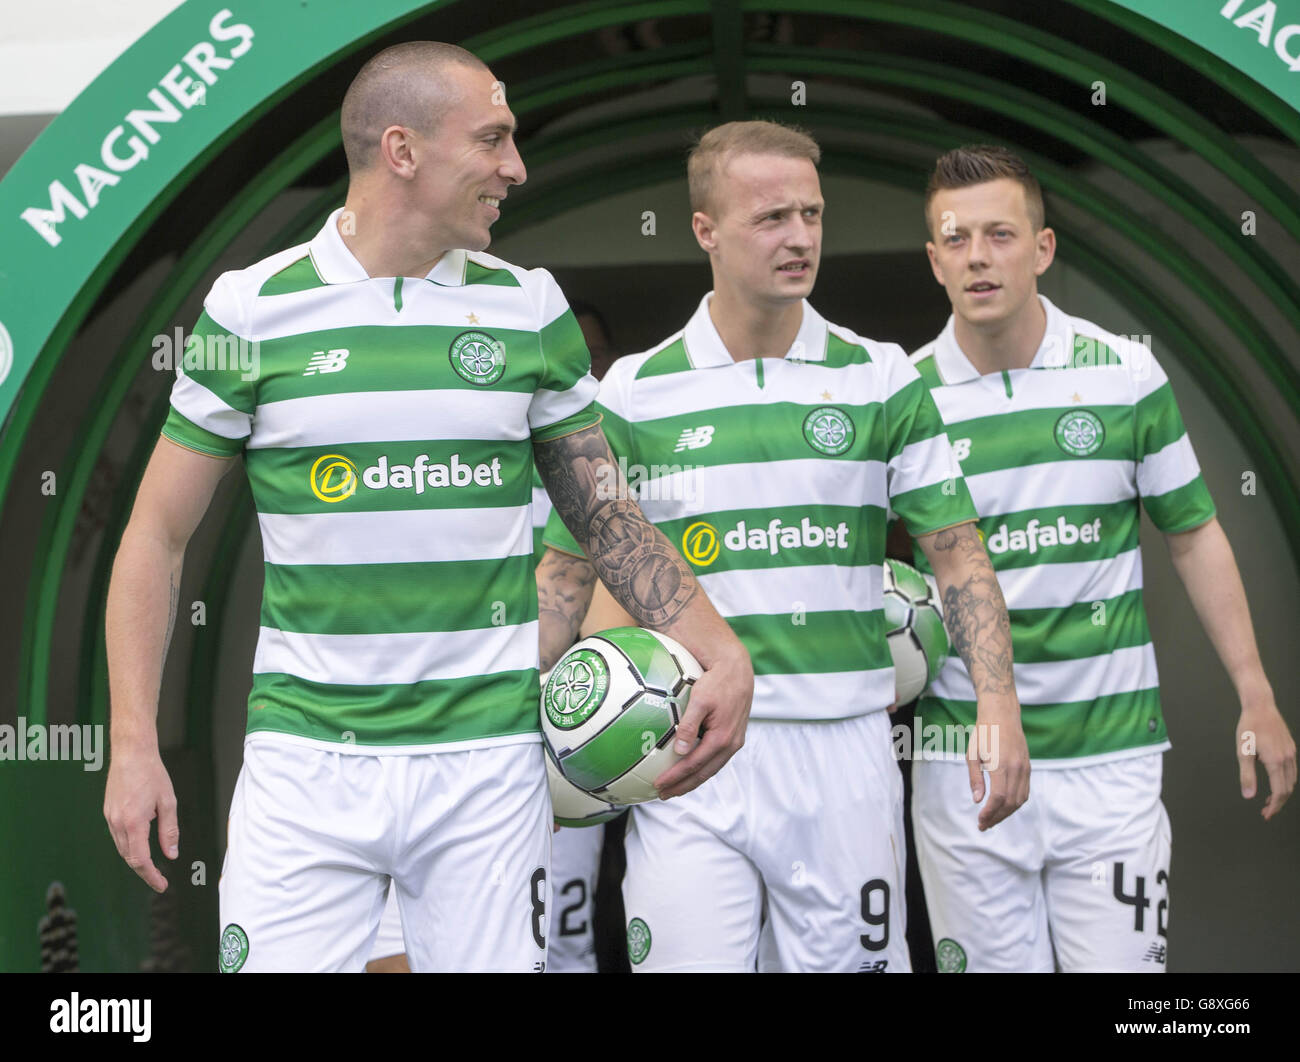 Celtic 2016-17 Kits